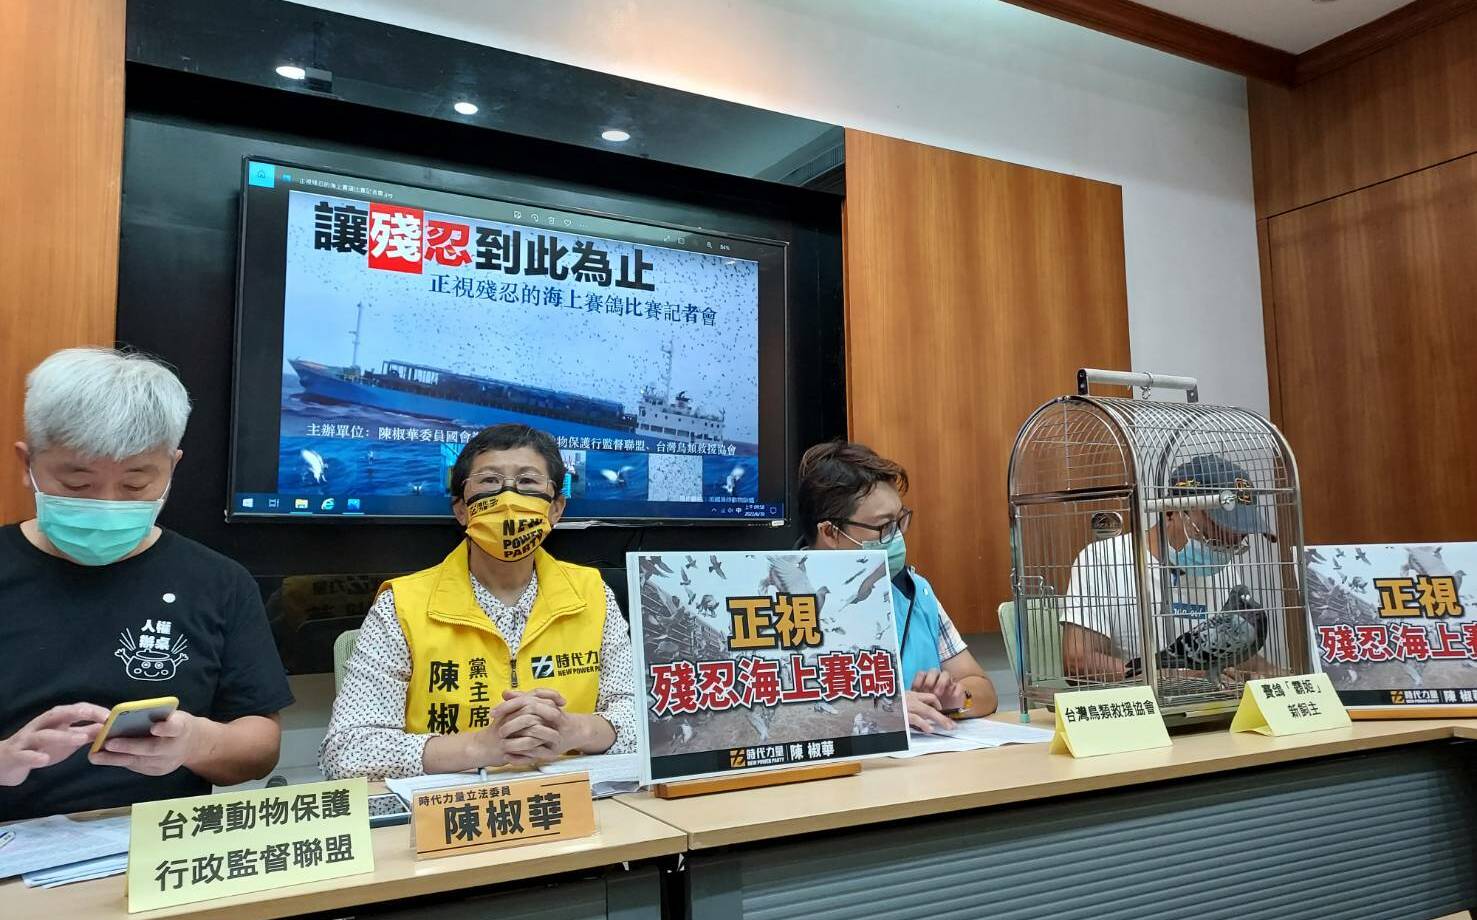 控海上賽鴿殘忍 立委批政府無作為讓台灣蒙羞 | 社會 | Newtalk